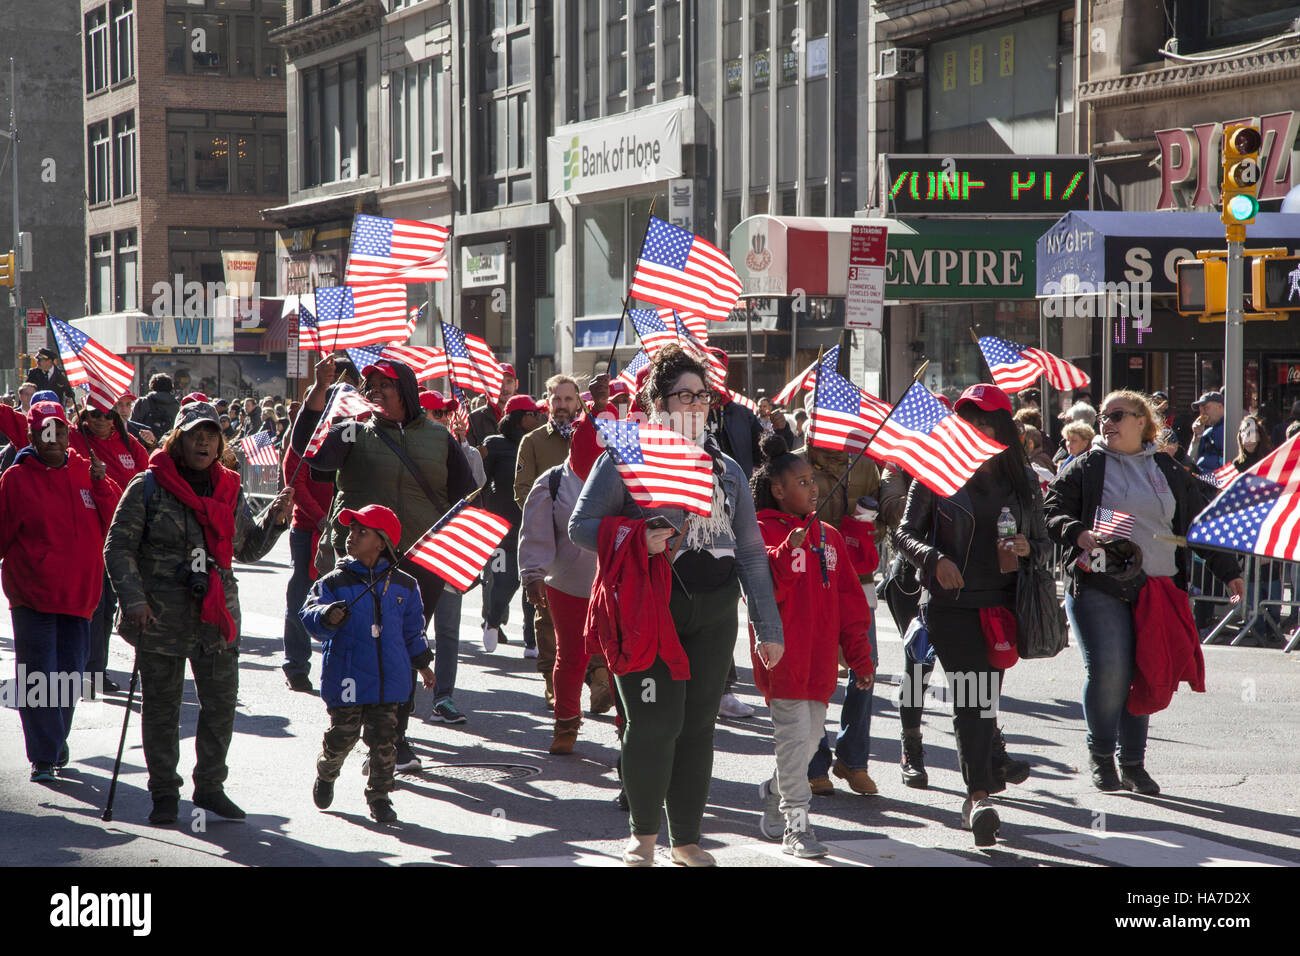 Desfile del Día de los veteranos, también conocida como America's Parade; marchas hasta 5th Avenue en la Ciudad de Nueva York. Foto de stock